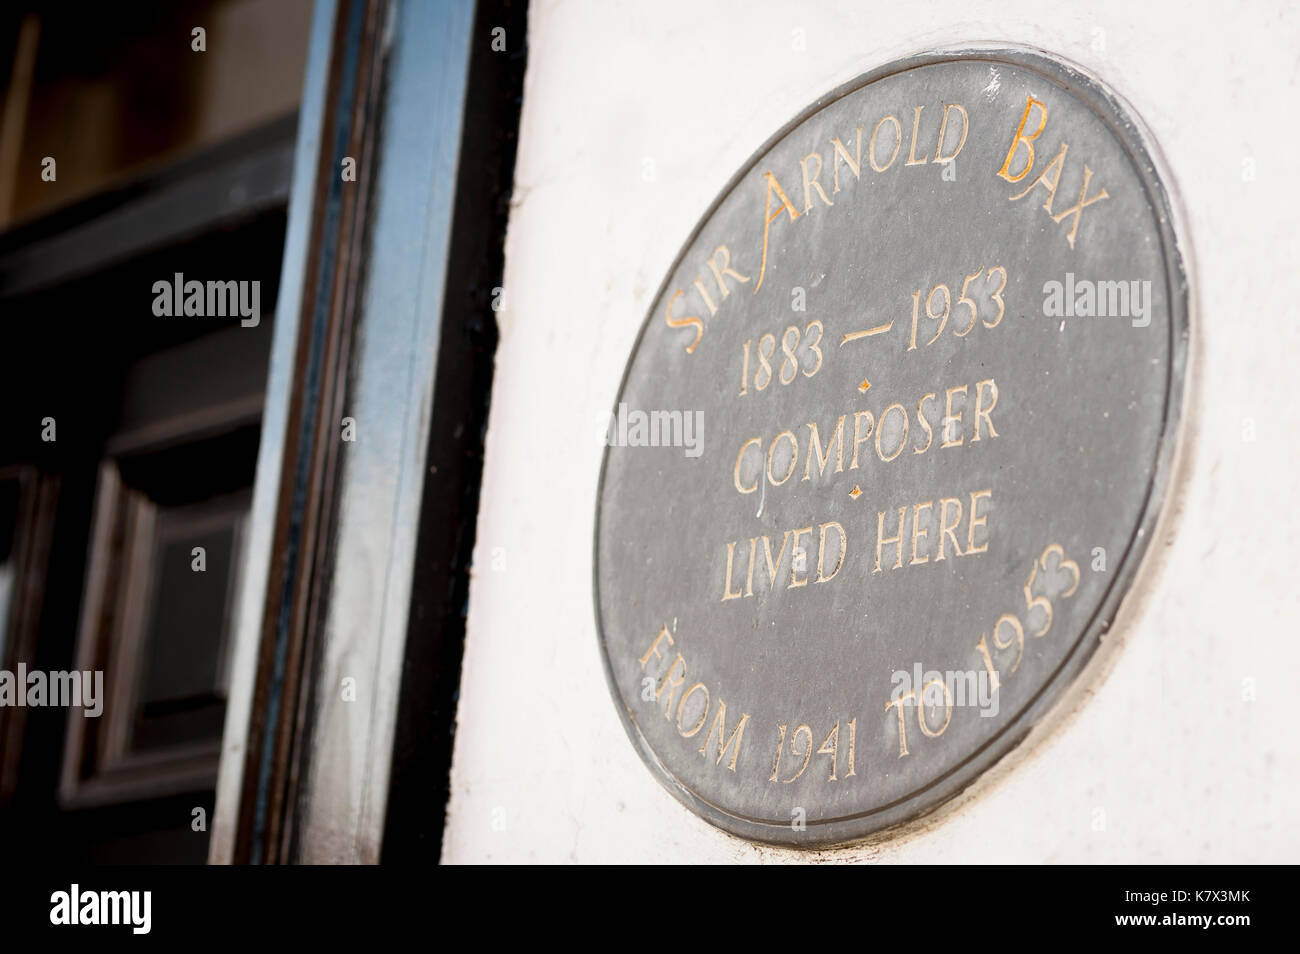 Sir Arnold Bax compositeur, plaque noire sur le mur du pub White Horse à Storrington, West Sussex, Angleterre, Royaume-Uni Banque D'Images